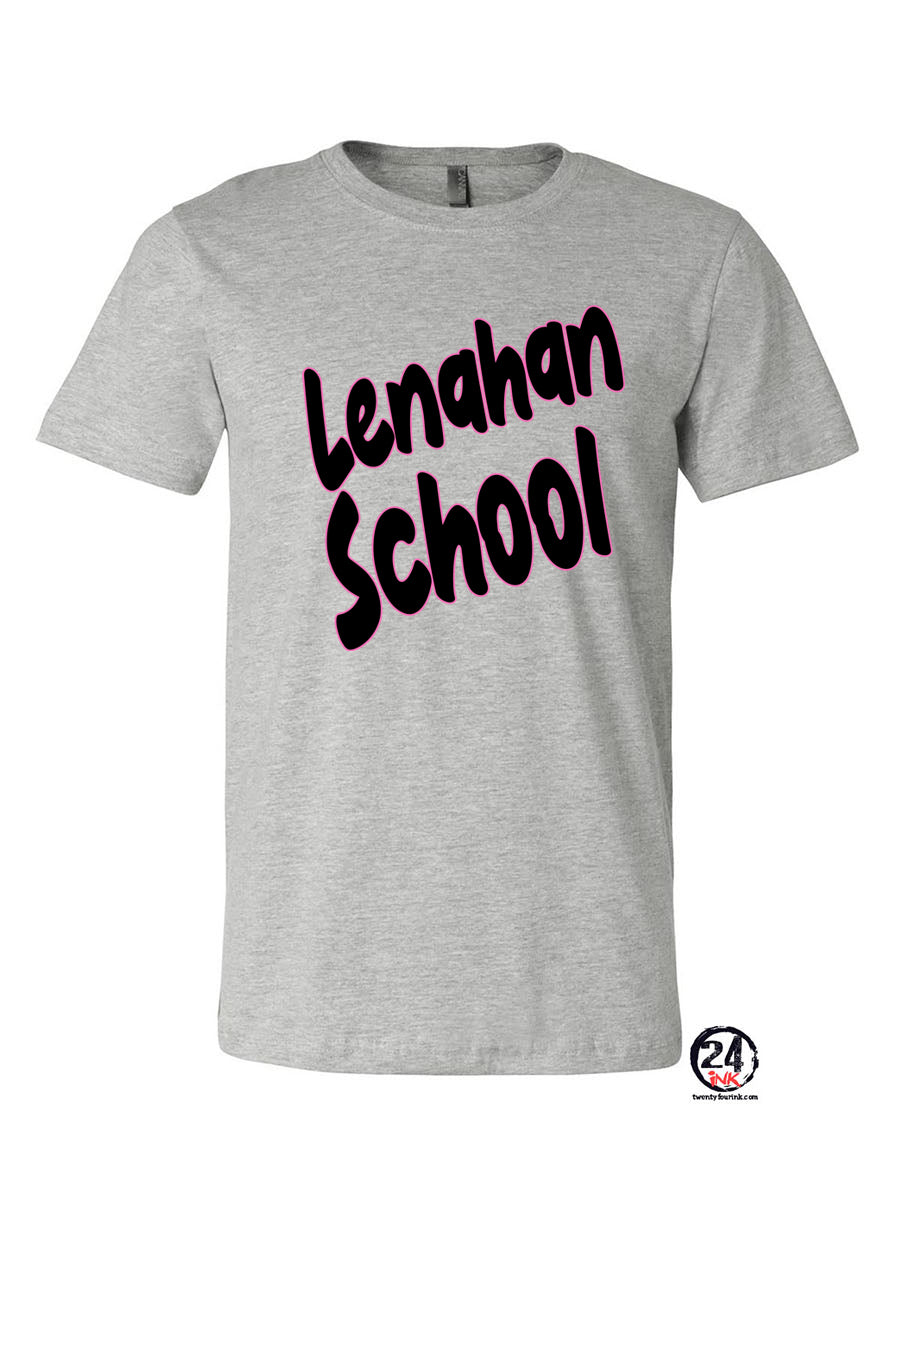 Lenahan Dance design 5 t-Shirt